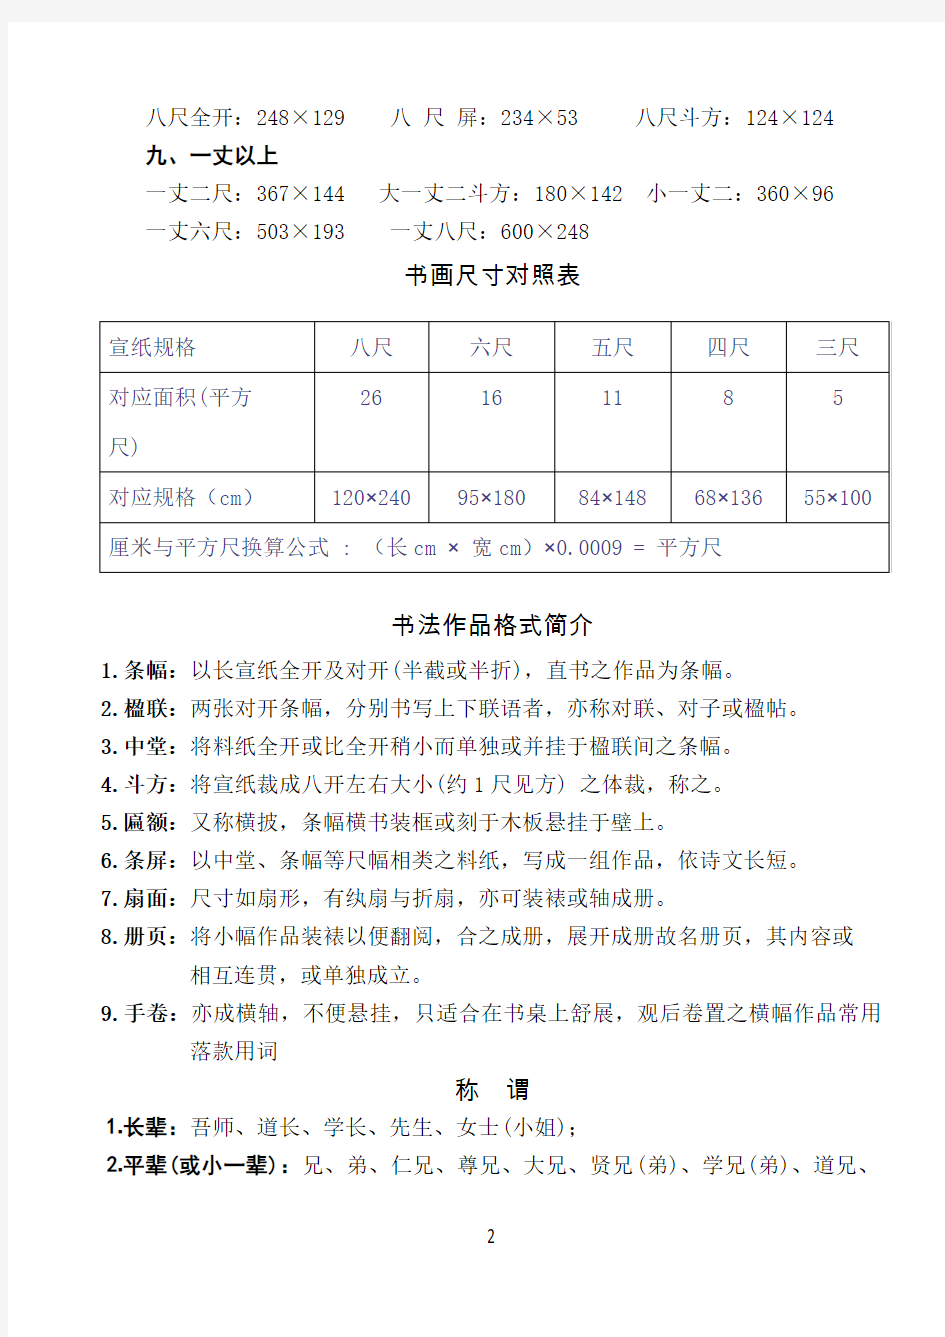 中国宣纸尺寸对照、作品格式、称谓、用印等常识